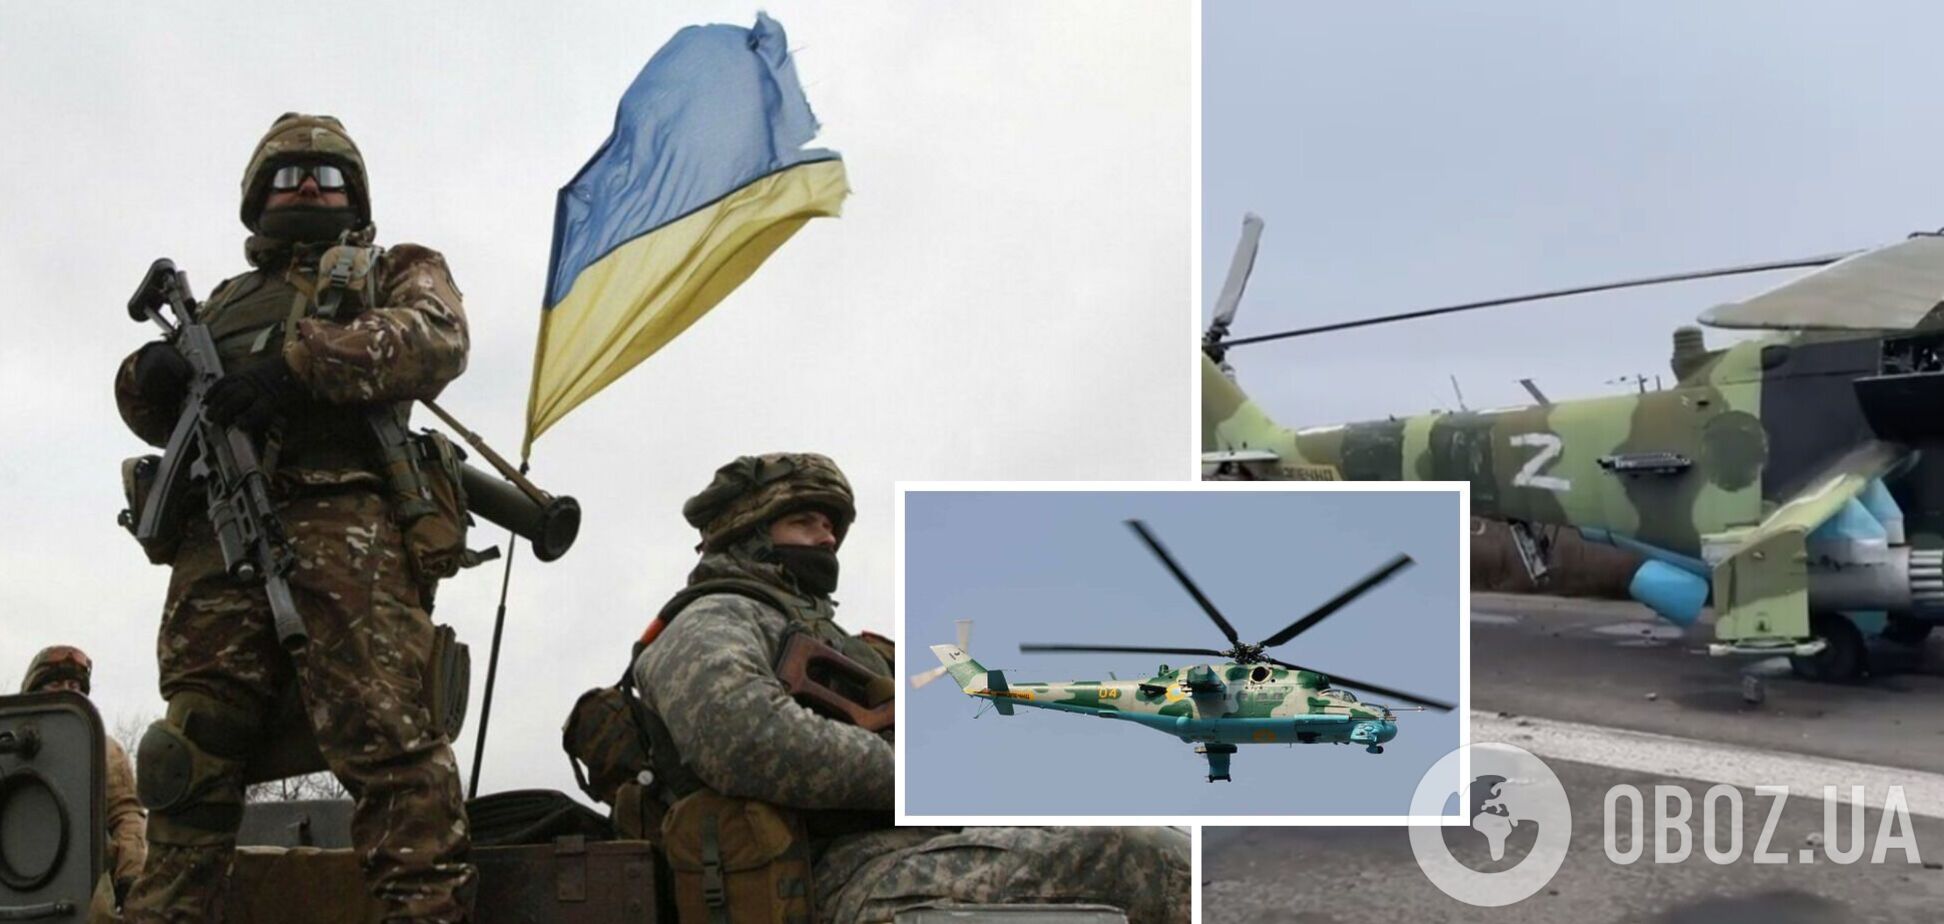 ВСУ затрофеили еще один вертолет, который ранее был украинским. Видео